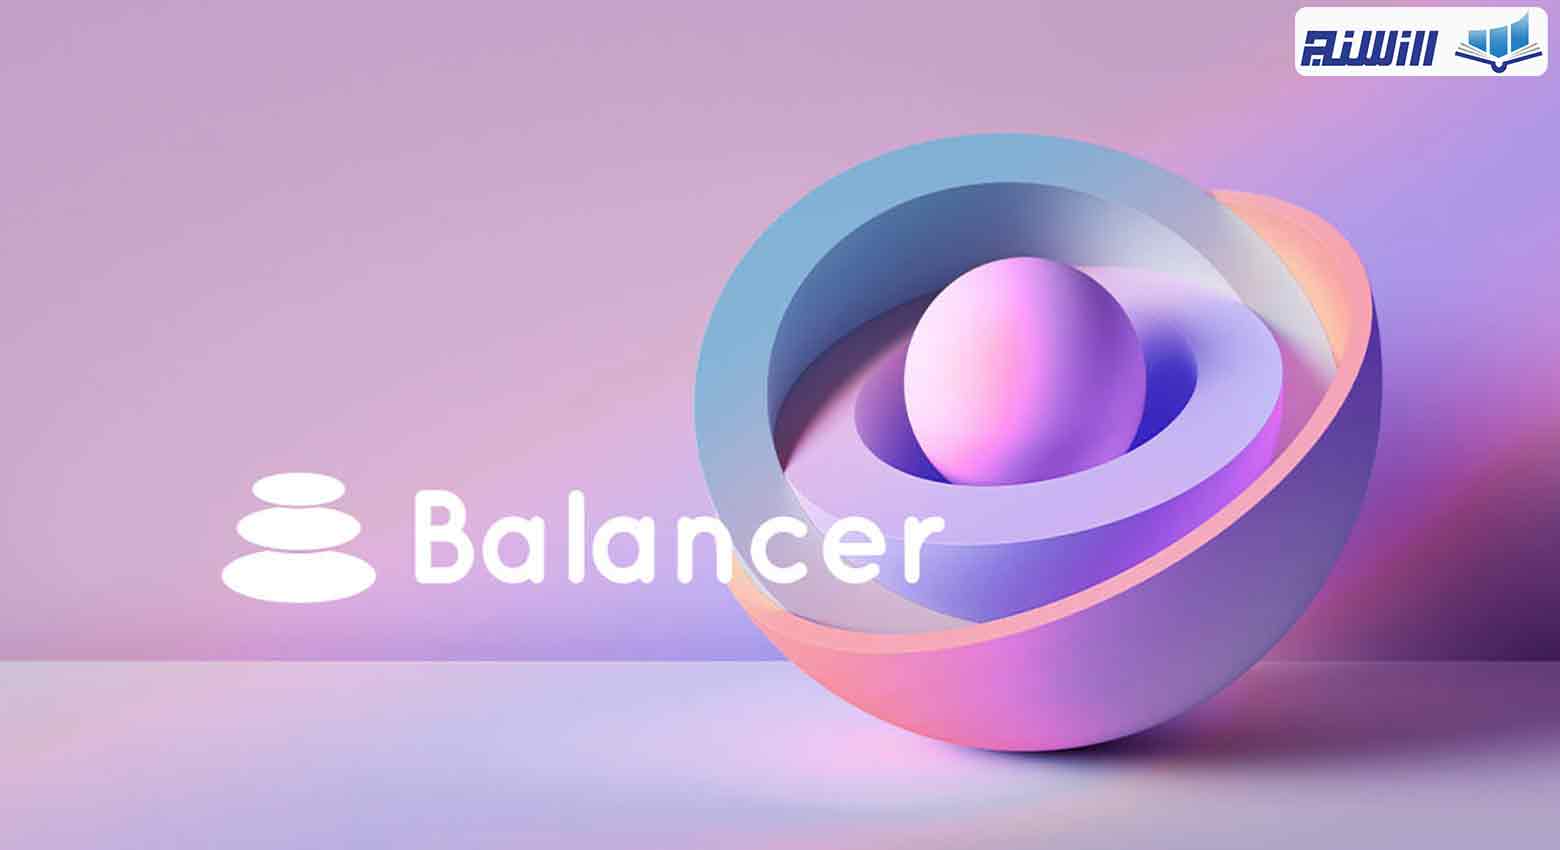 ویژگی های پلتفرم Balancer